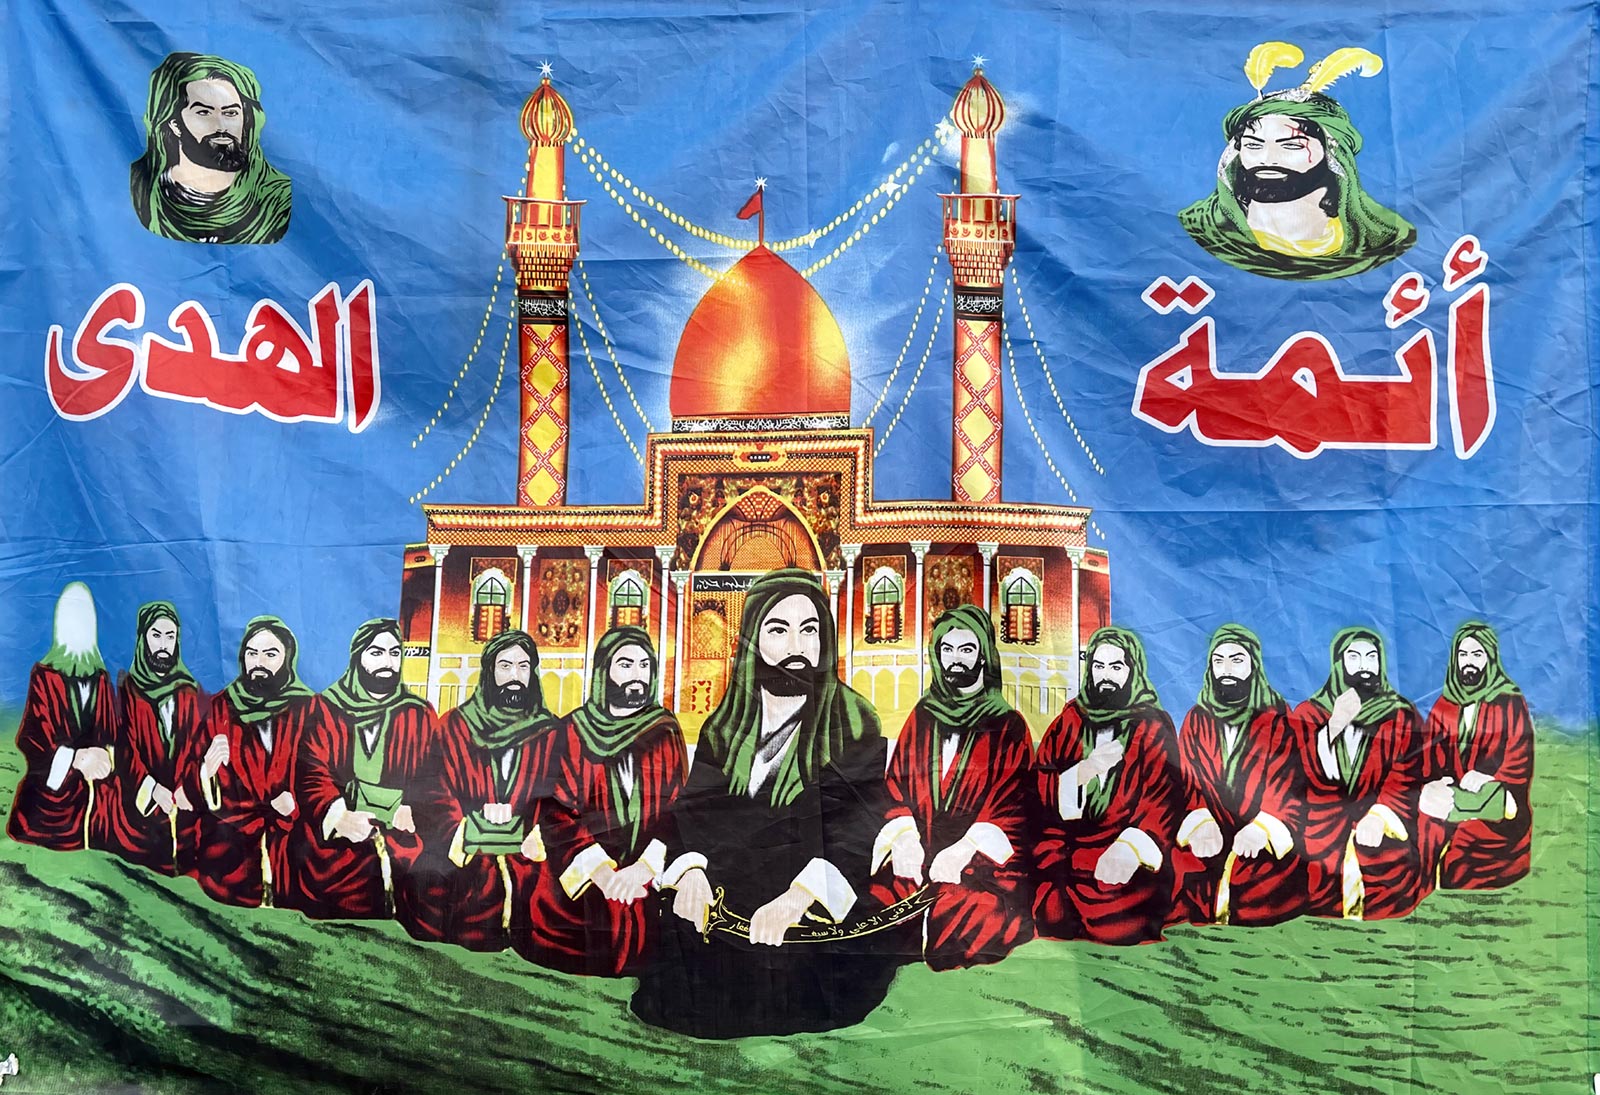 Dipinto di dodici imam sciiti, con l'imam Ali al centro